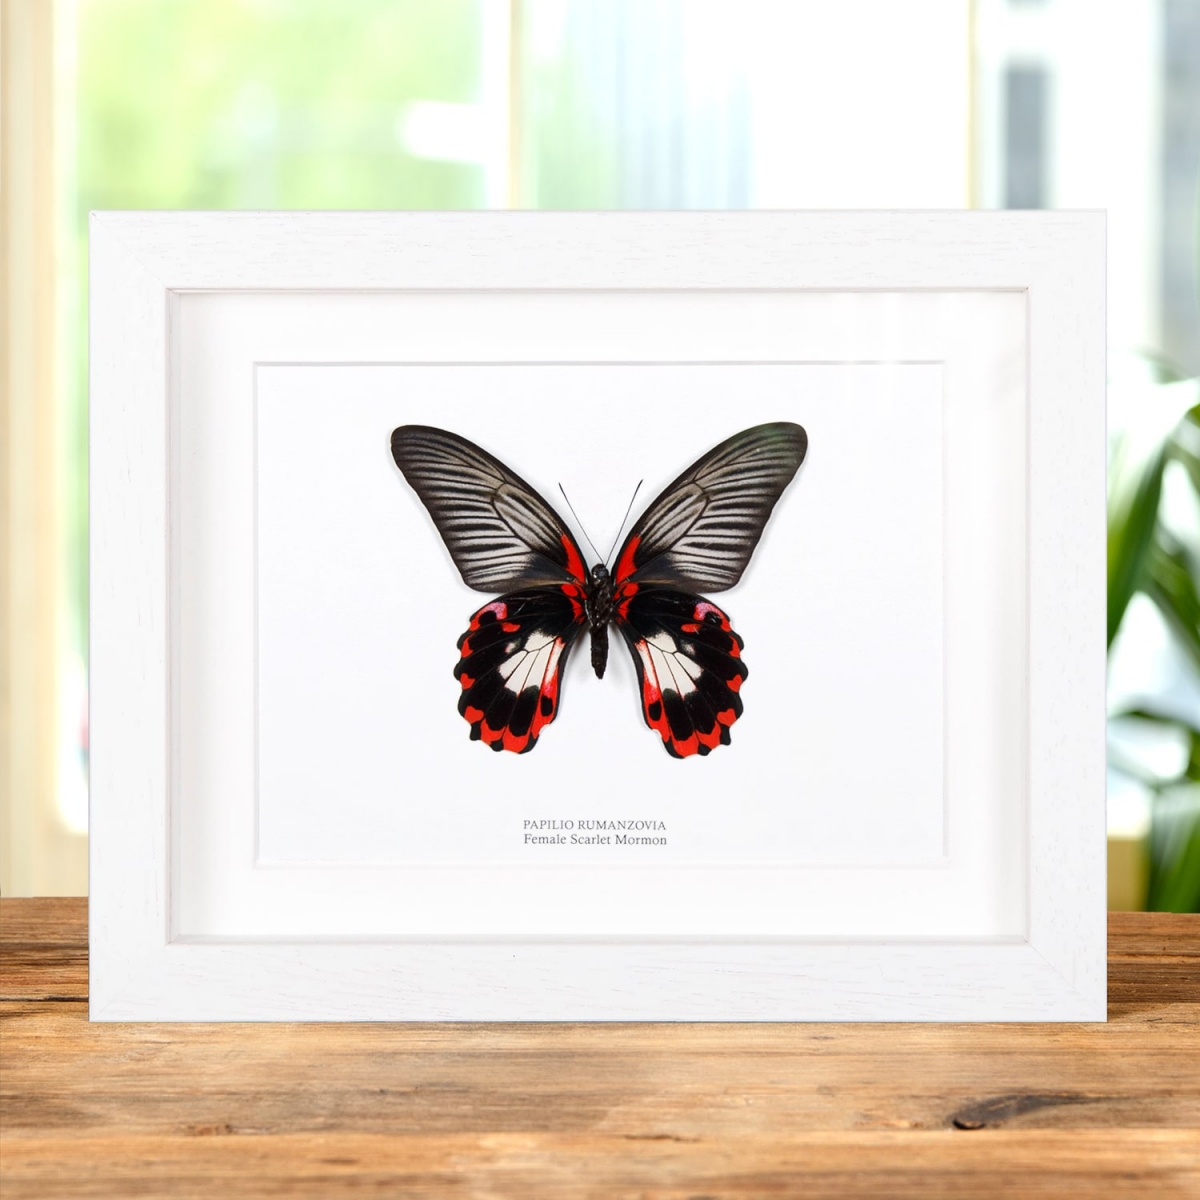 Scarlet Mormon White Form in Box Frame (Papilio rumanzovia)